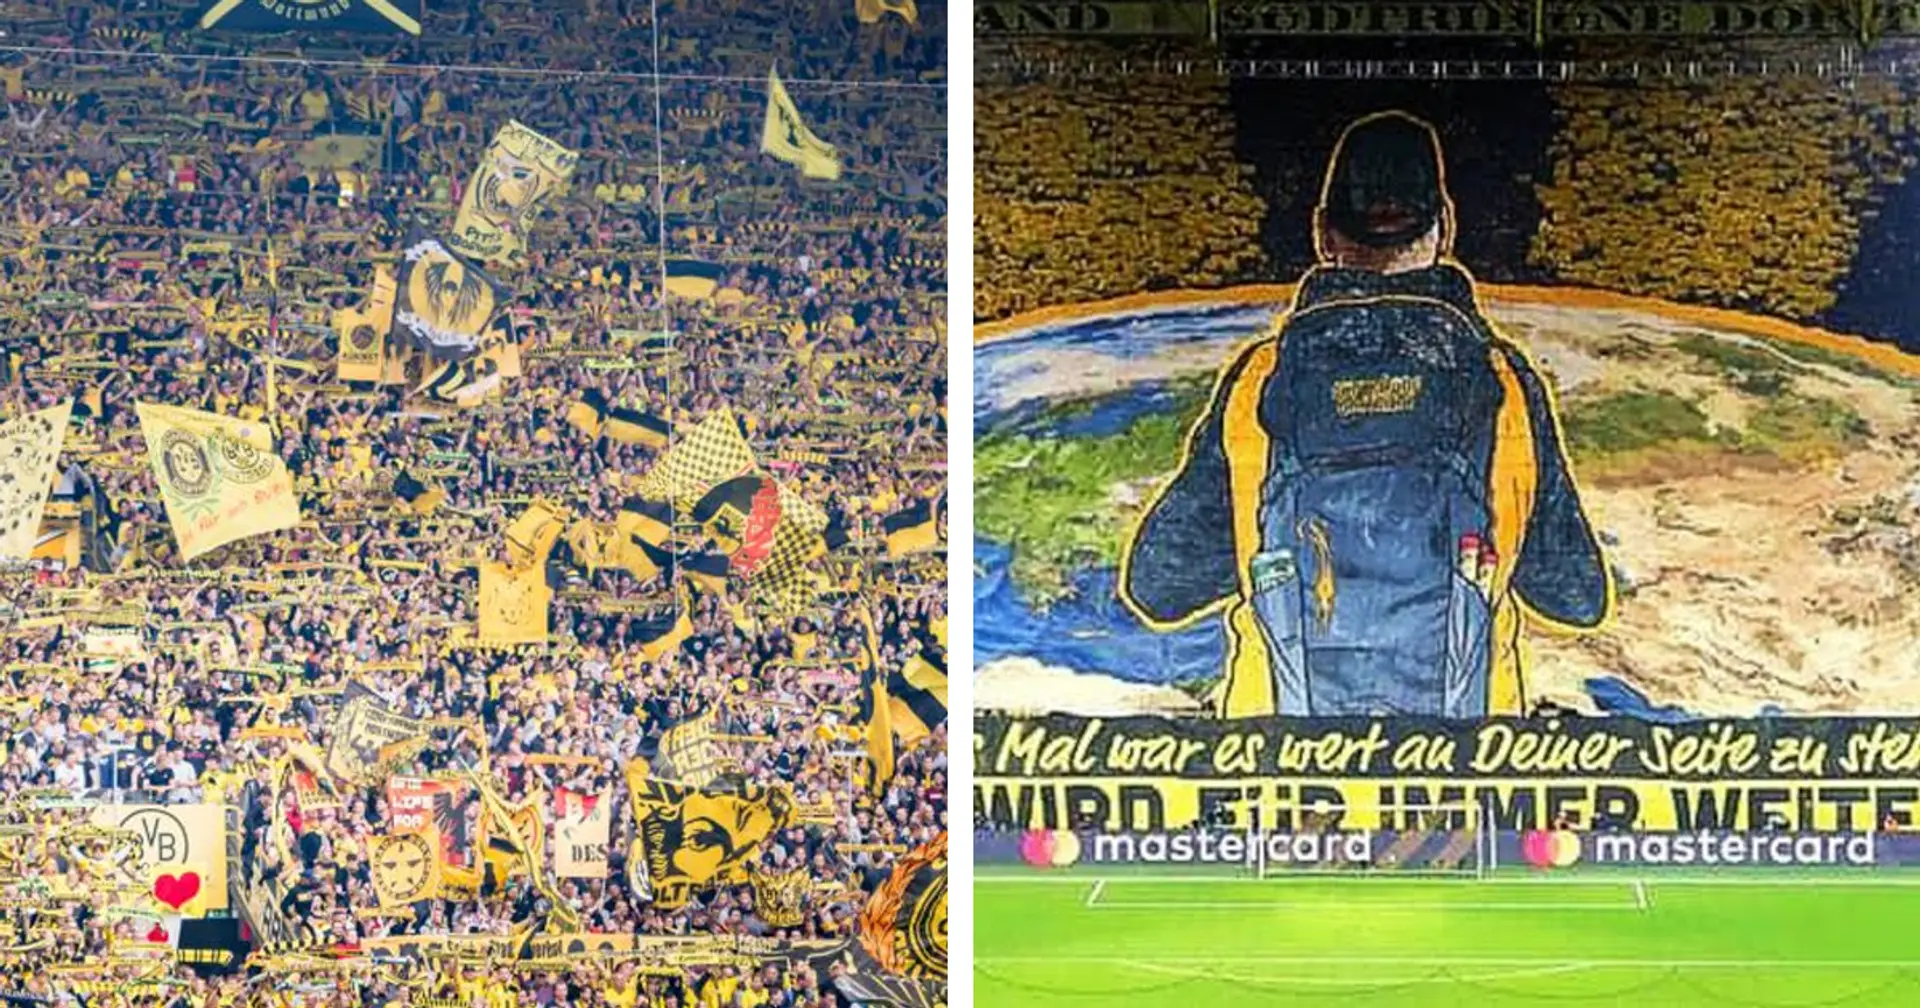 Dortmund-Fans gehören zu den lautstärksten in dieser Champions League, aber sie wurden doch unterschätzt